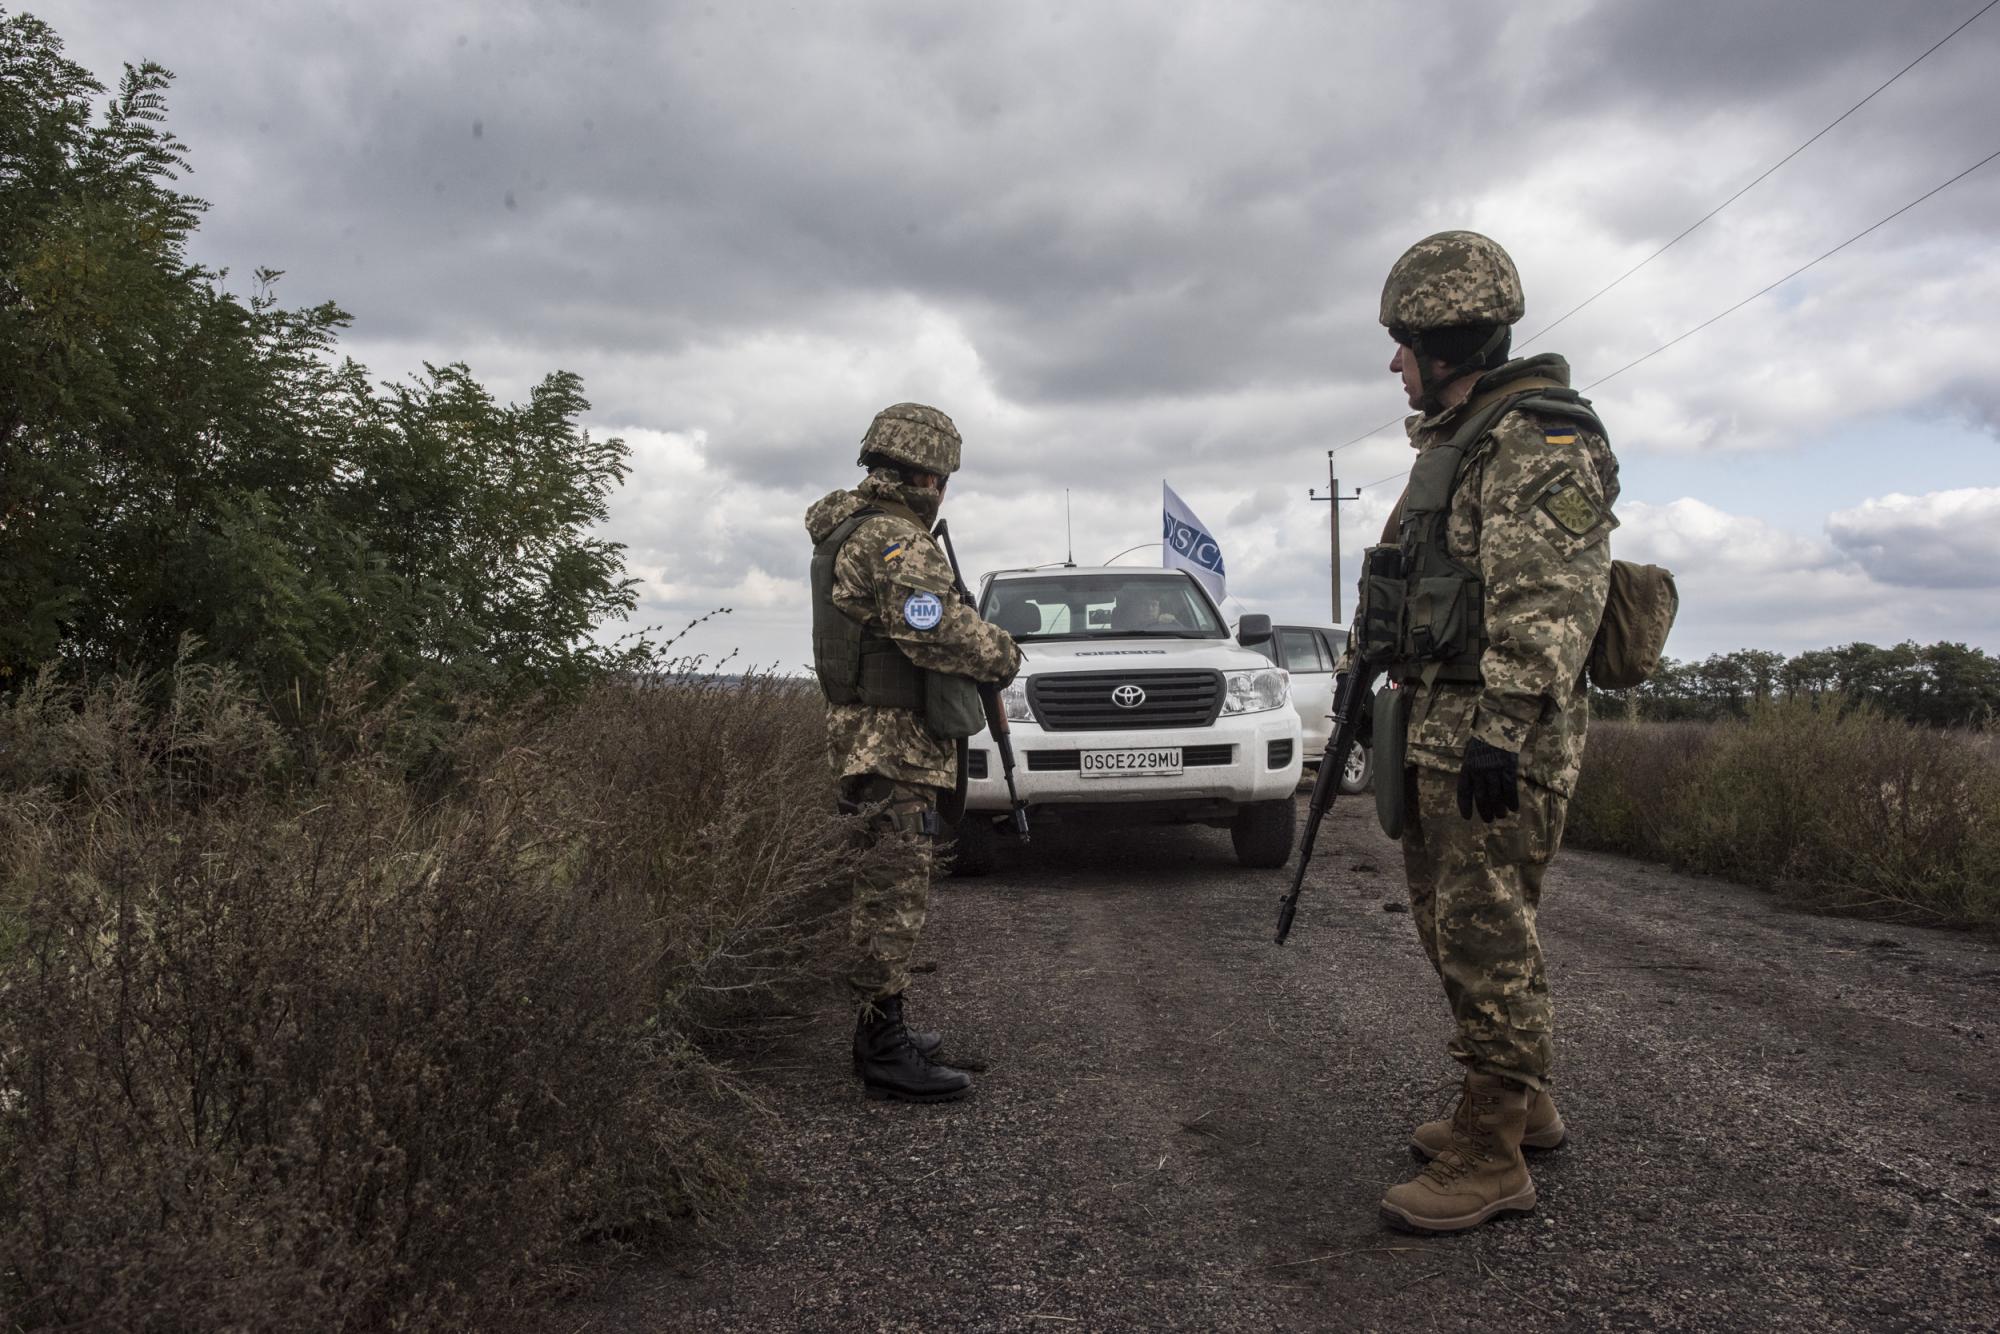 Снєгирьов: Українська делегація занижує суб’єктність ОБСЄ в переговорах і таким чином підігрує Росії